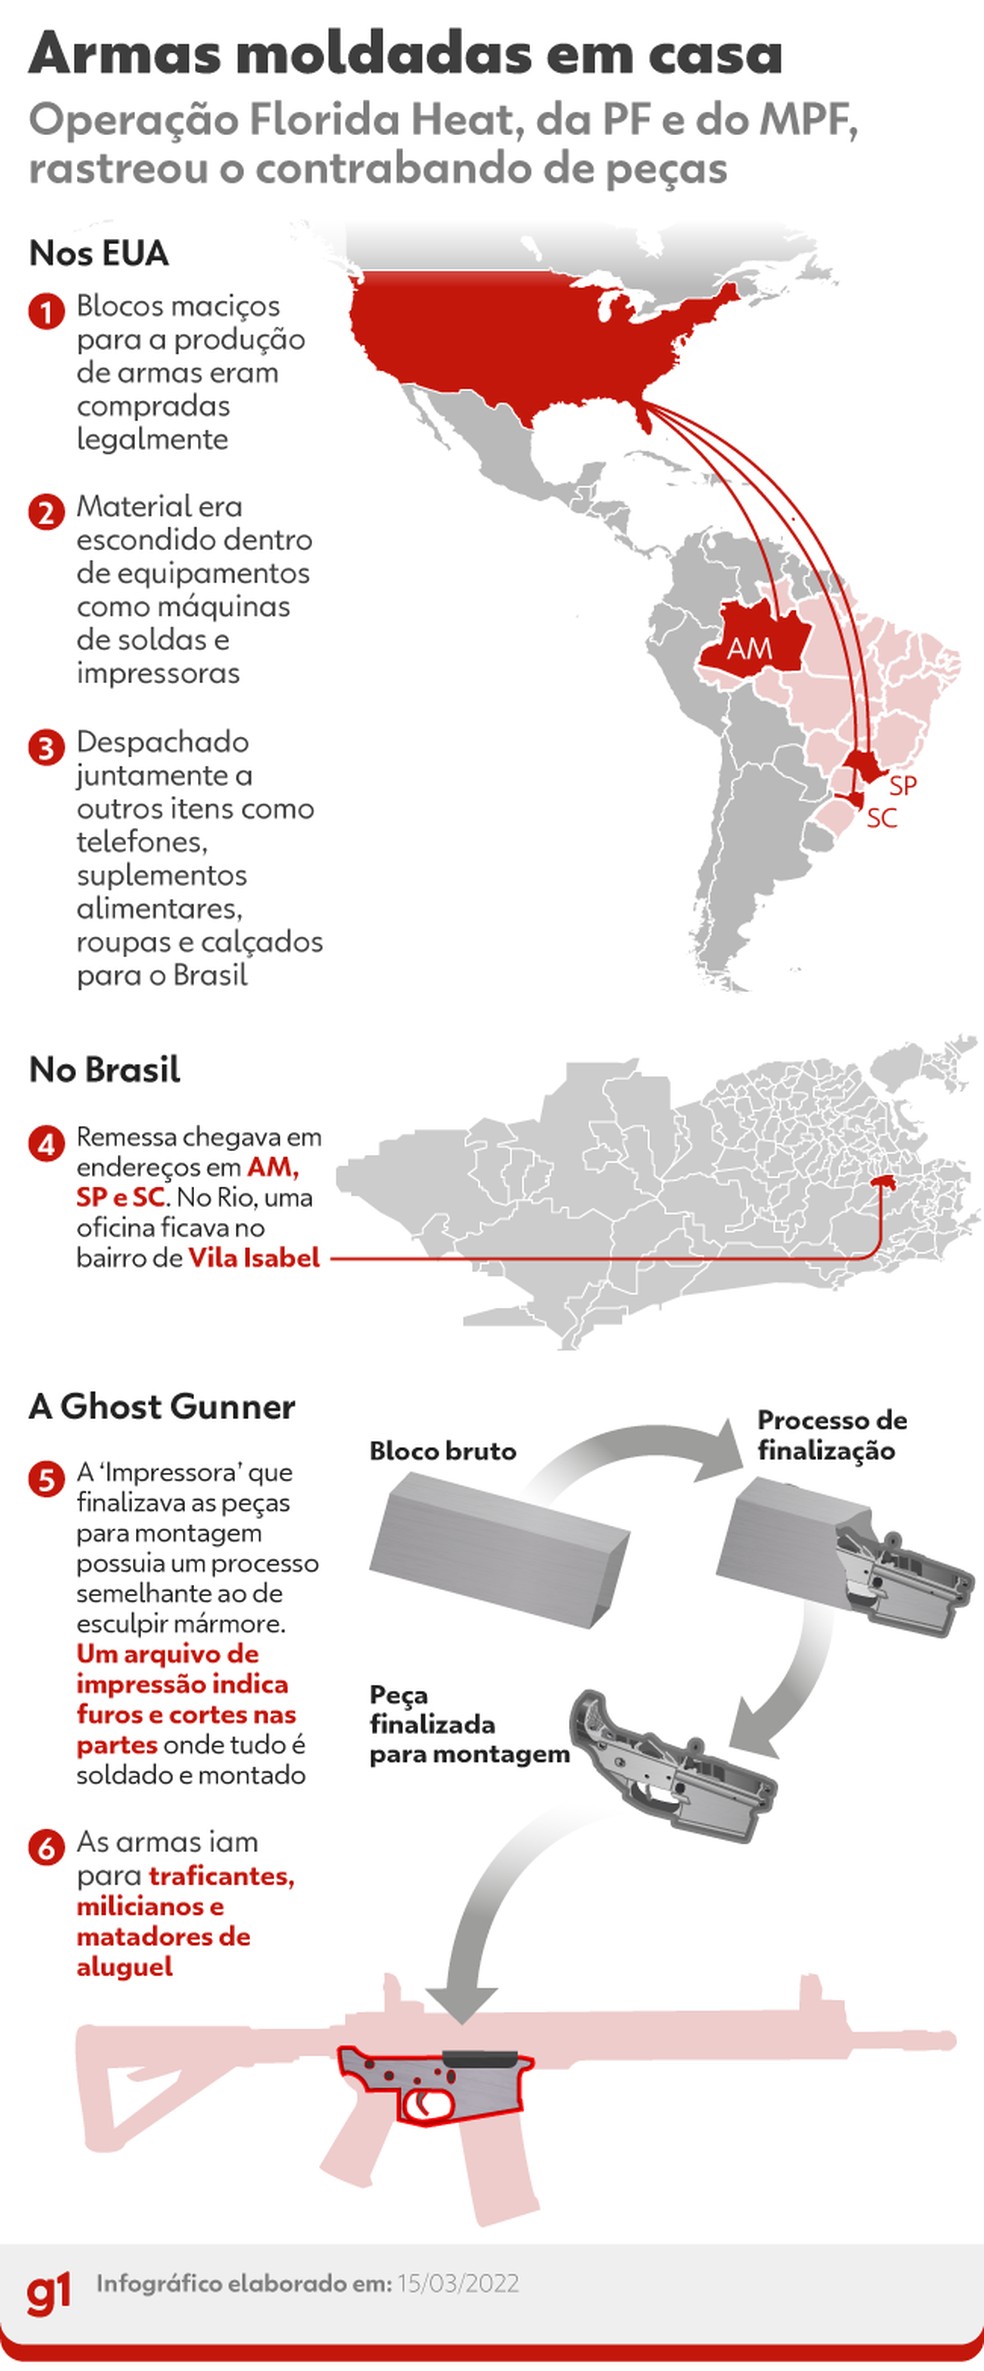 Macaco Blindado: Comprar Suplementos, Recife